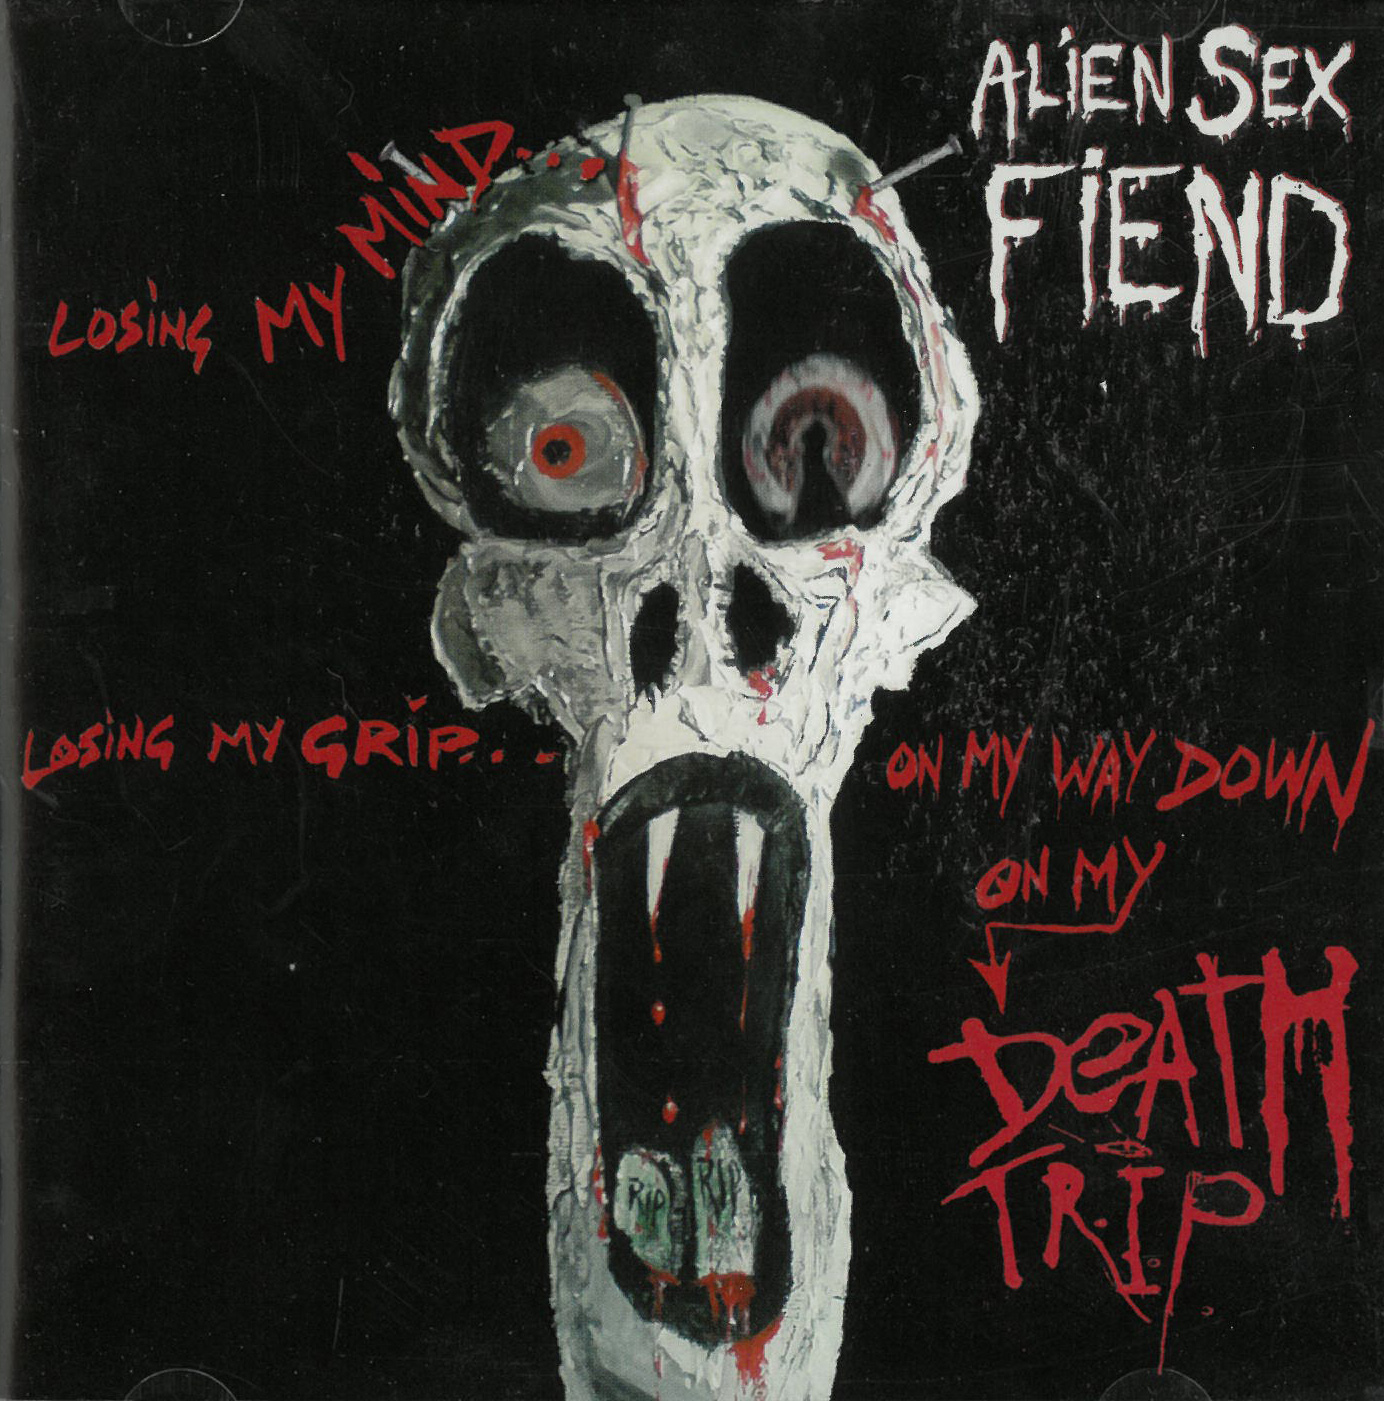 Alien Sex Fiend Death Trip CD 602139